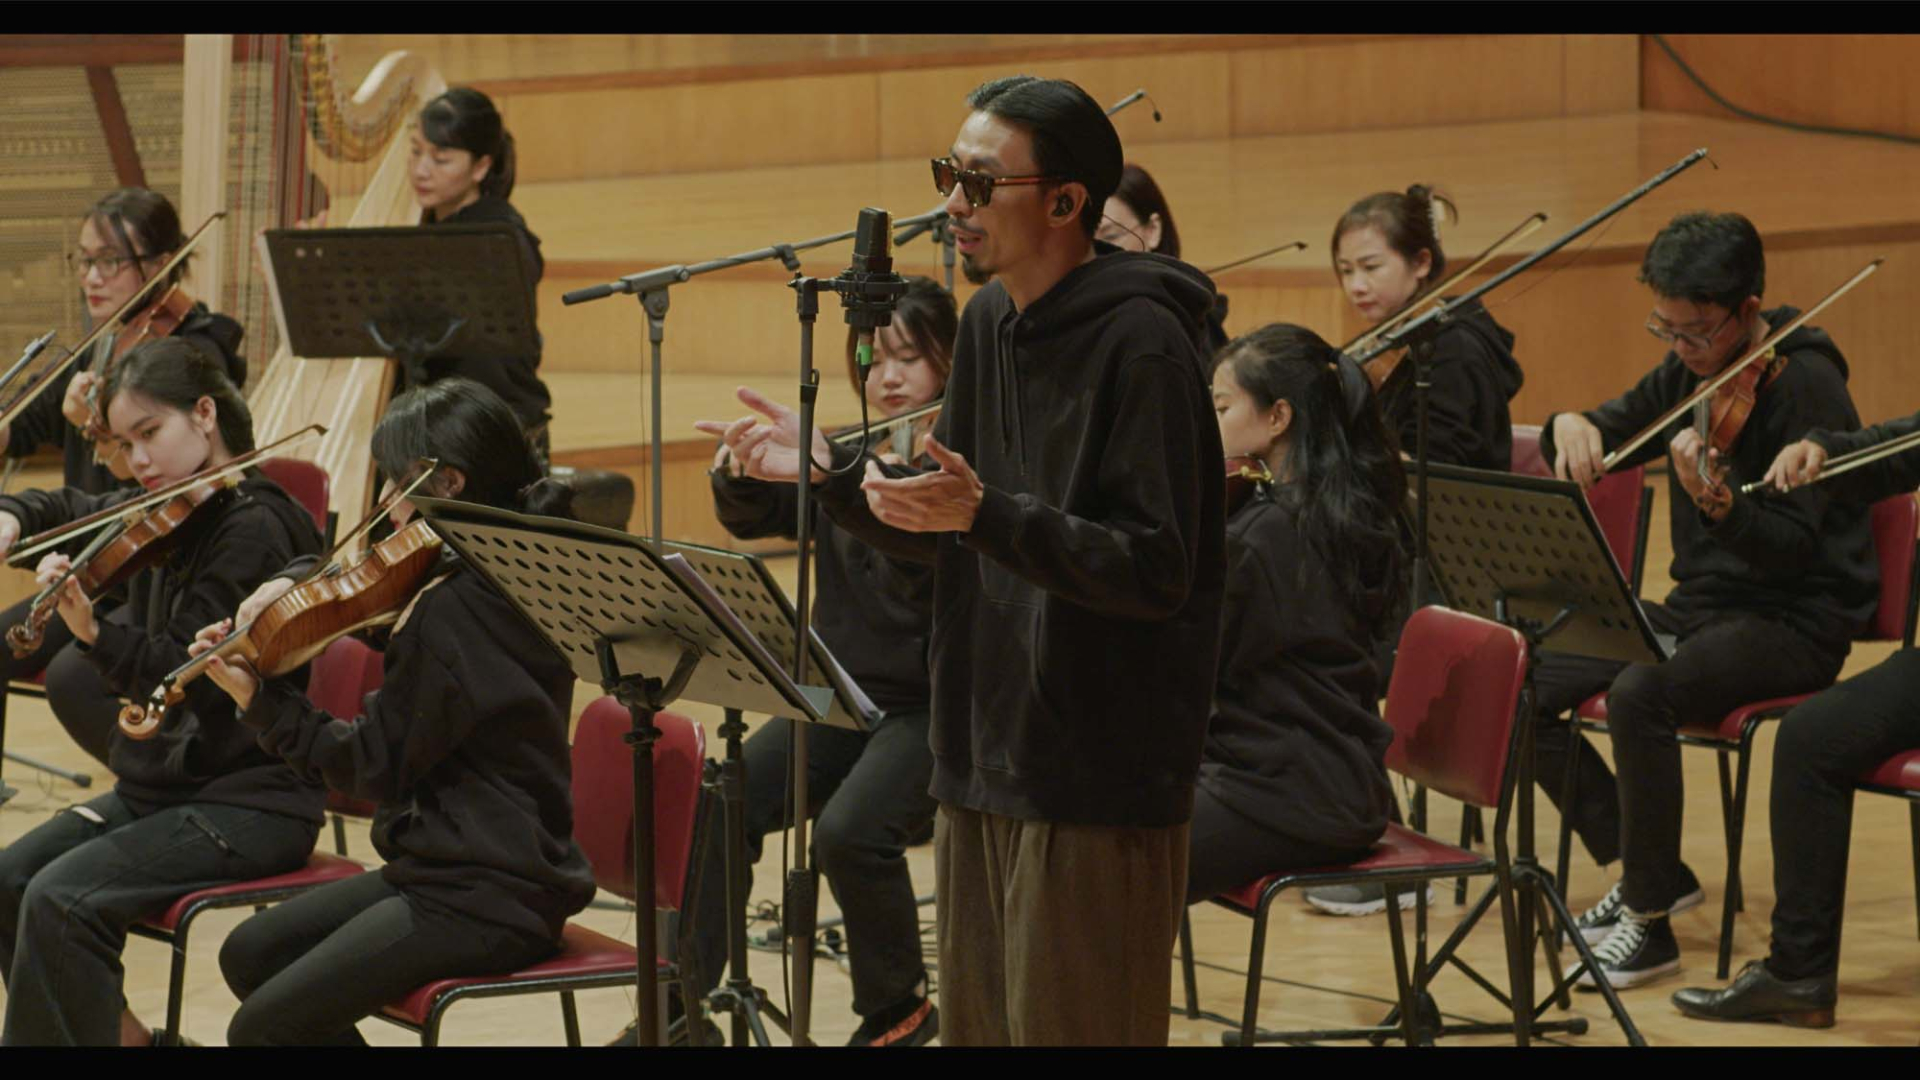 Đen tung teaser “dongvui harmony' - album live được hòa âm phối khí bởi nhạc sĩ Trần Mạnh Hùng và nhạc trưởng Đồng Quang Vinh - ảnh 1